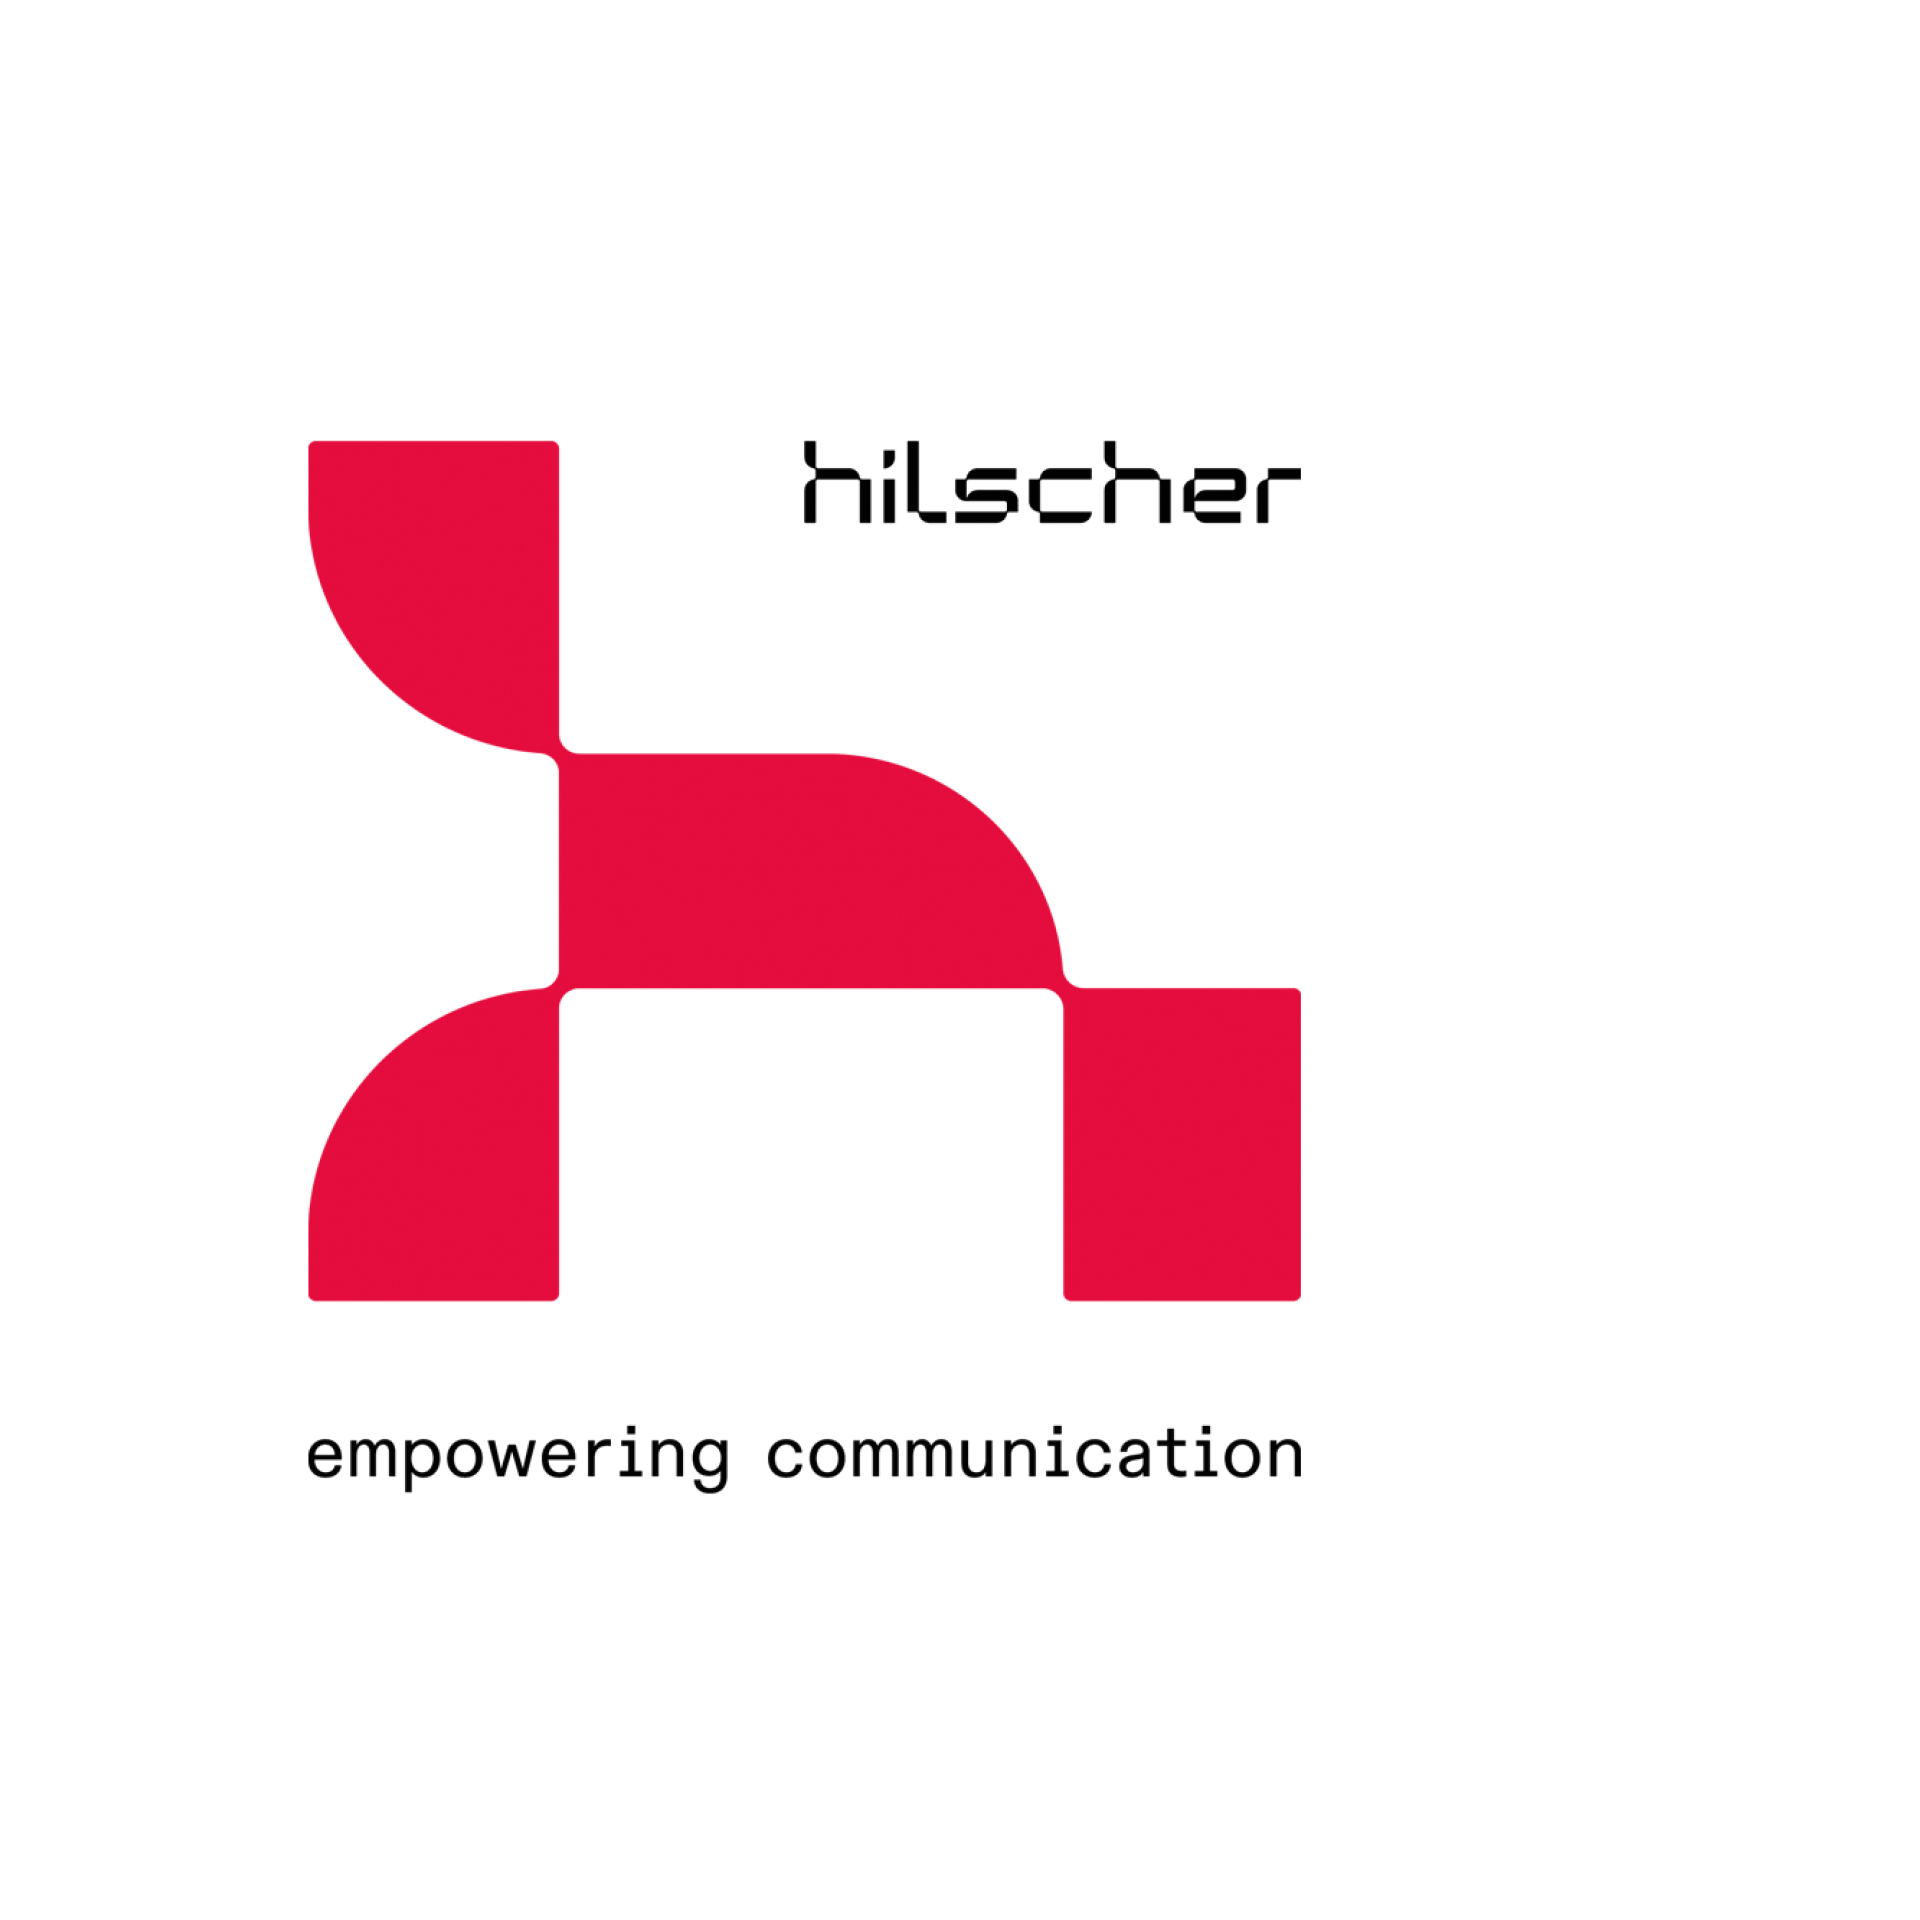 Hilscher Logo